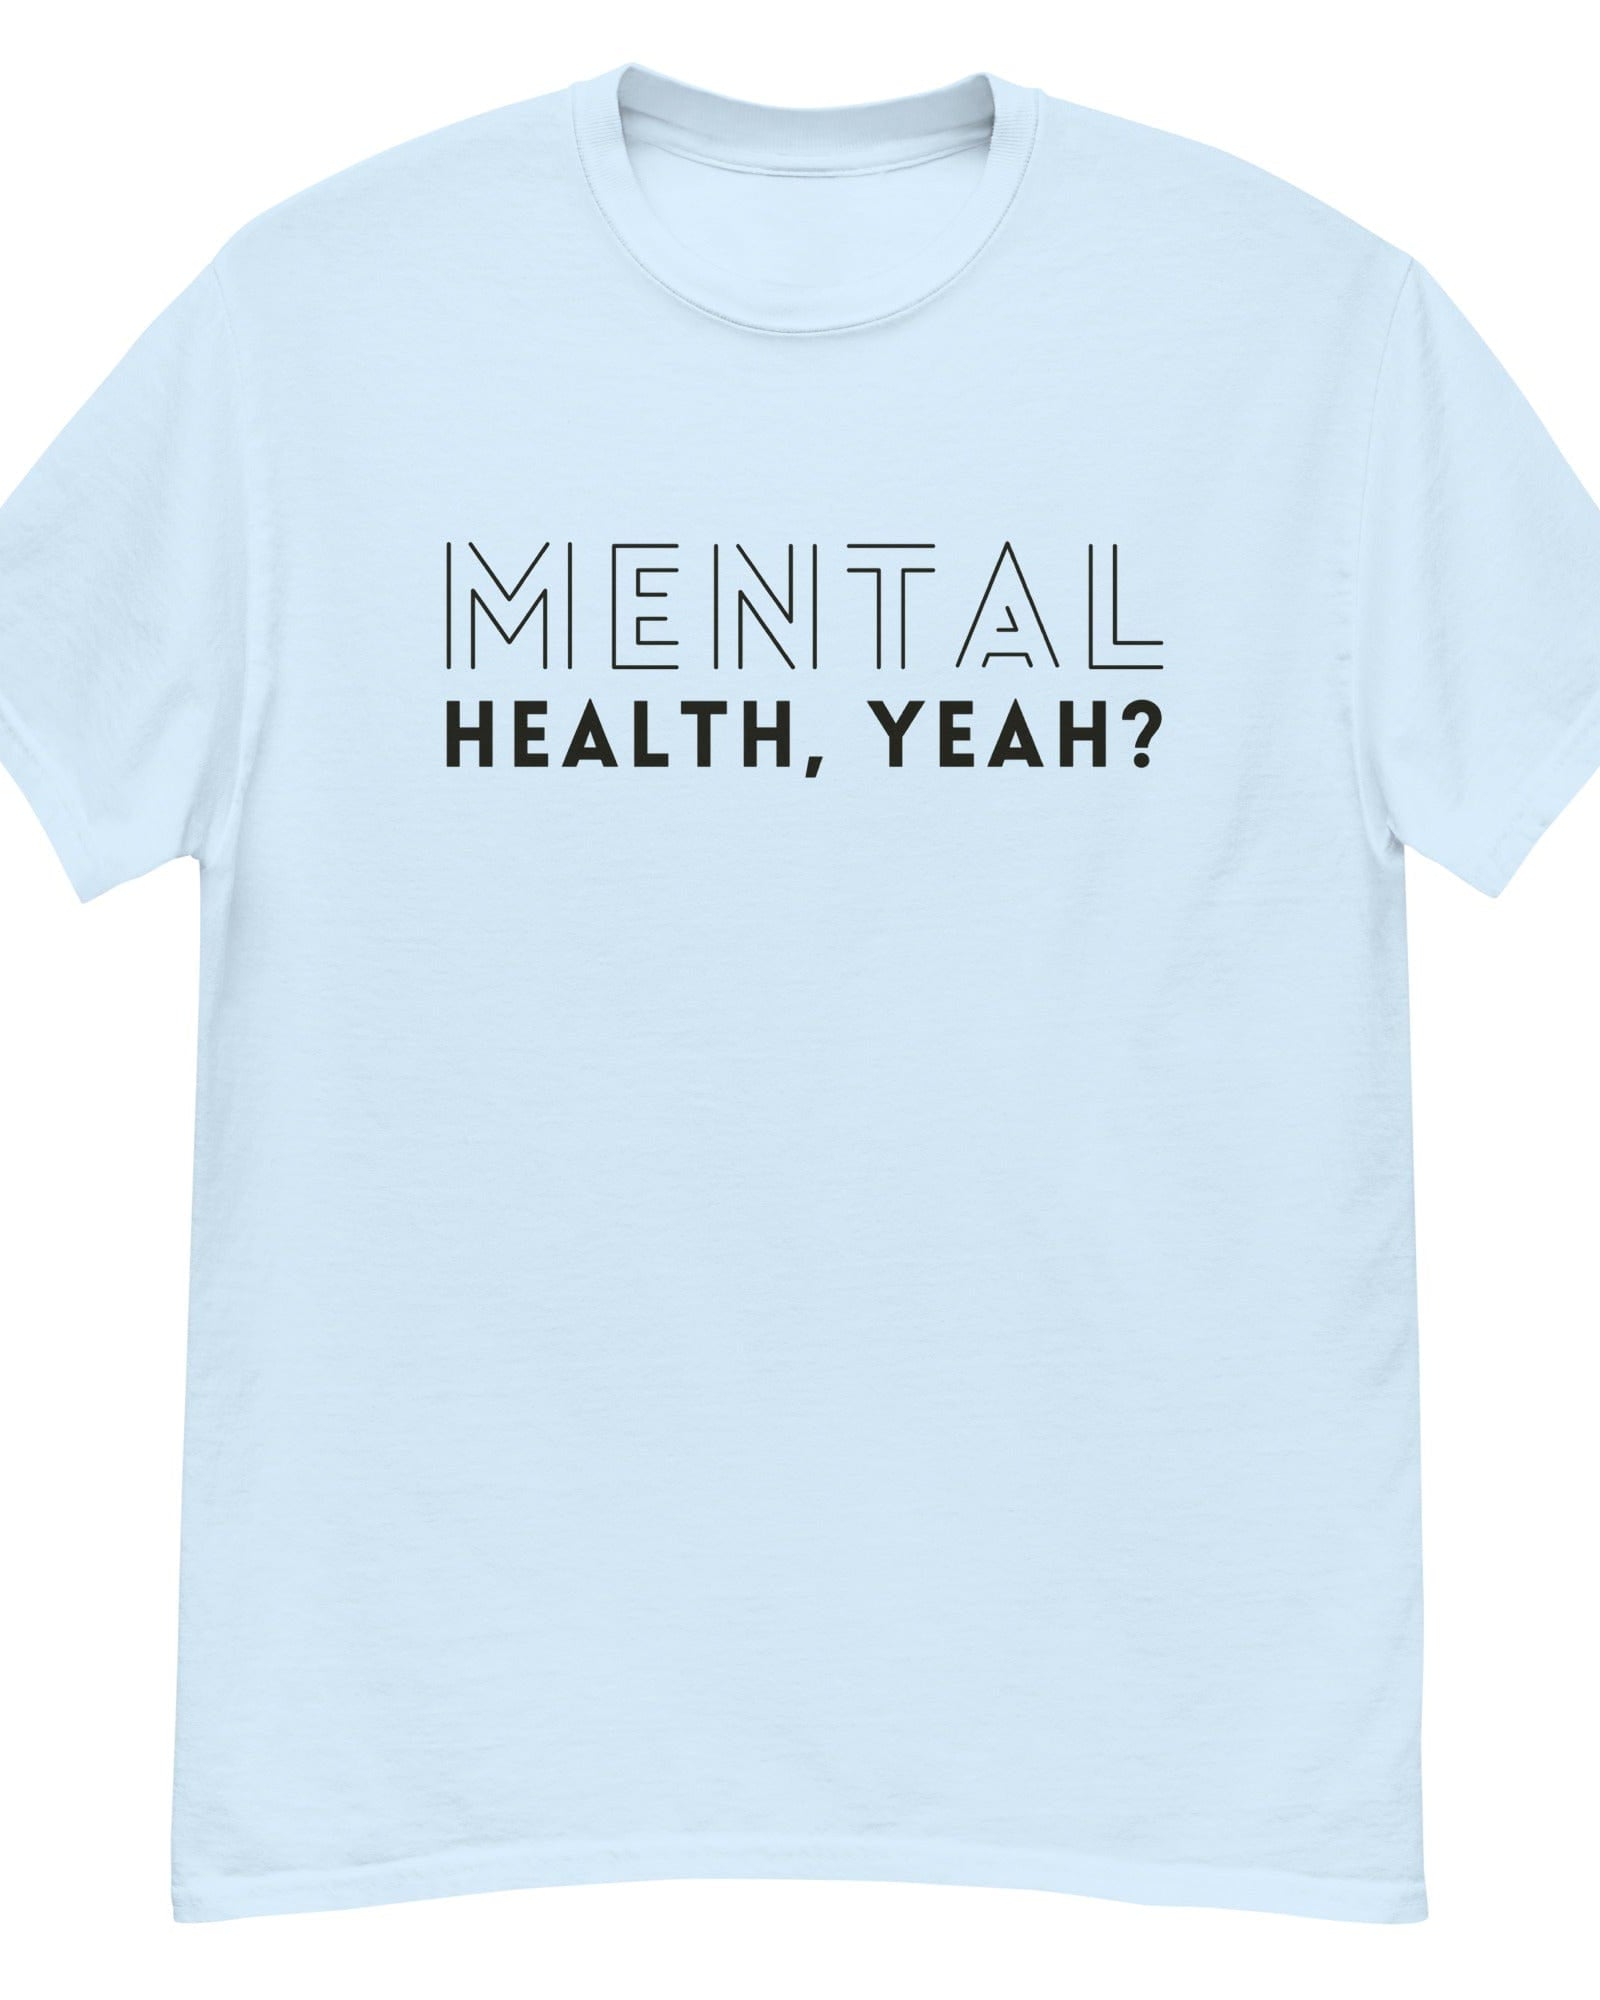 Mental Health, Yeah? Men's Heavyweight Tshirt Light Blue / S Men's Shirts Jolly & Goode